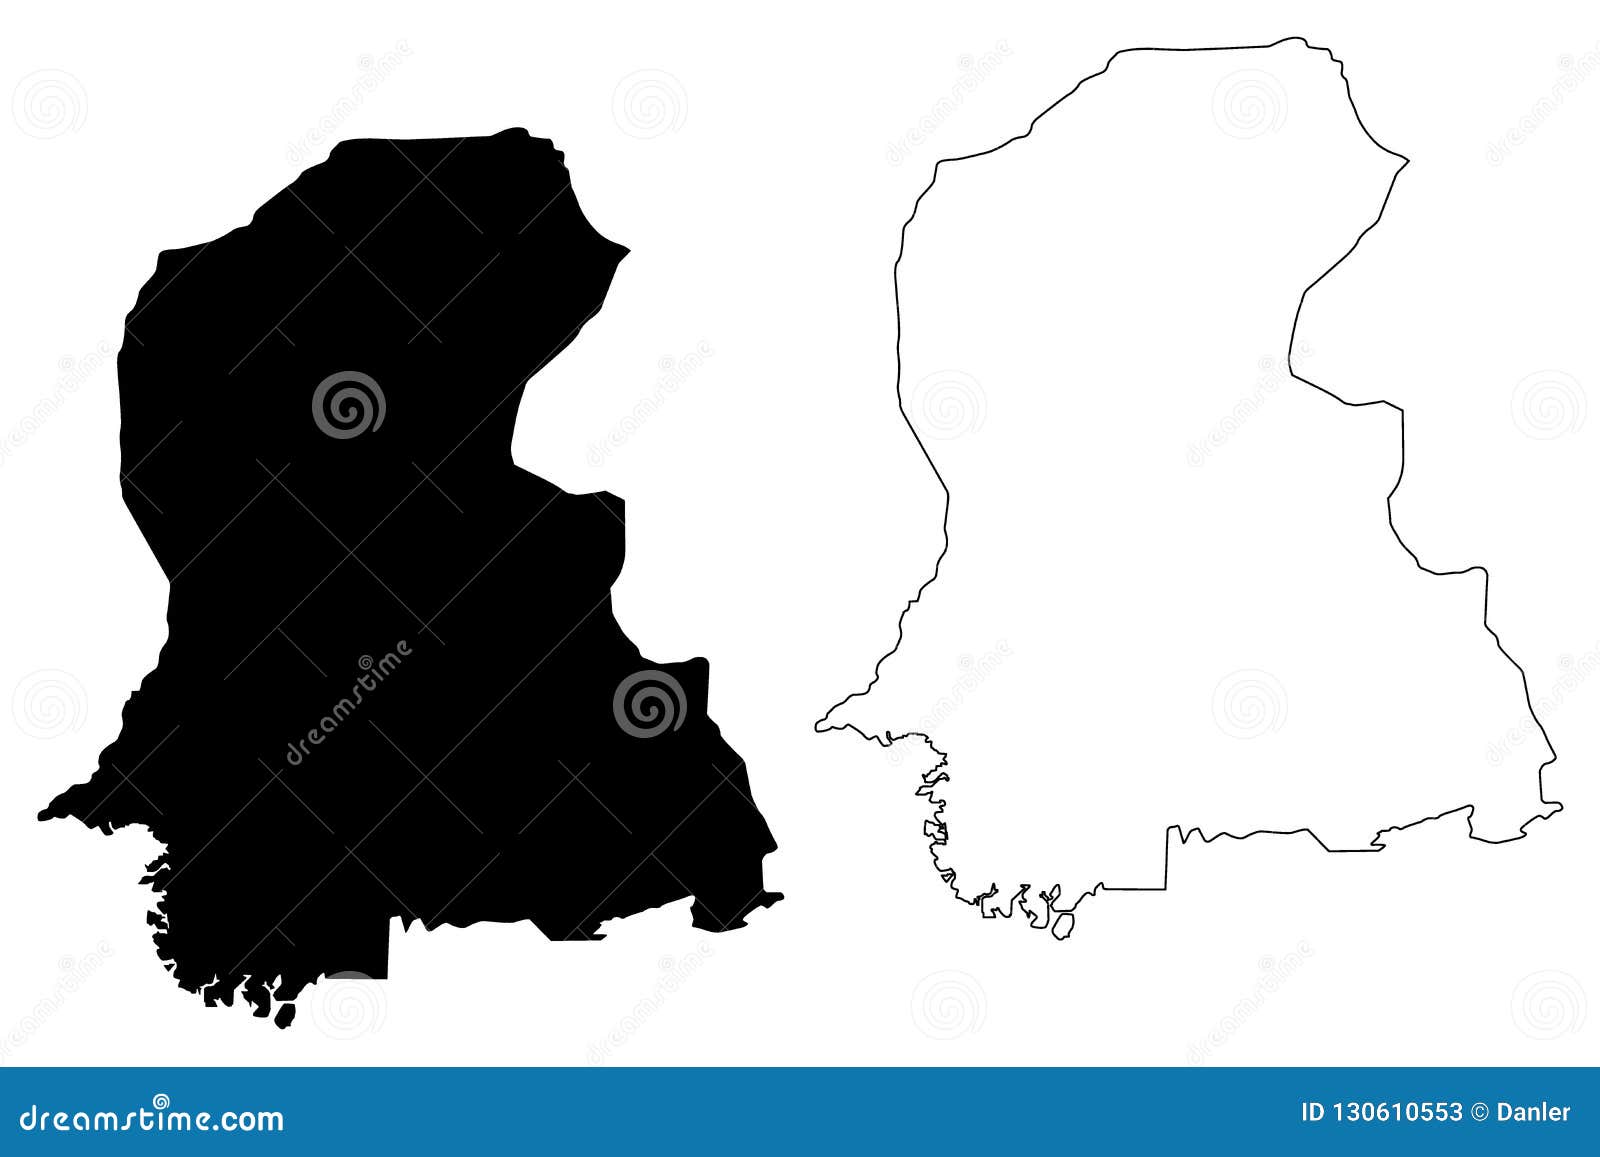 Sindh Map Vector | CartoonDealer.com #130610553